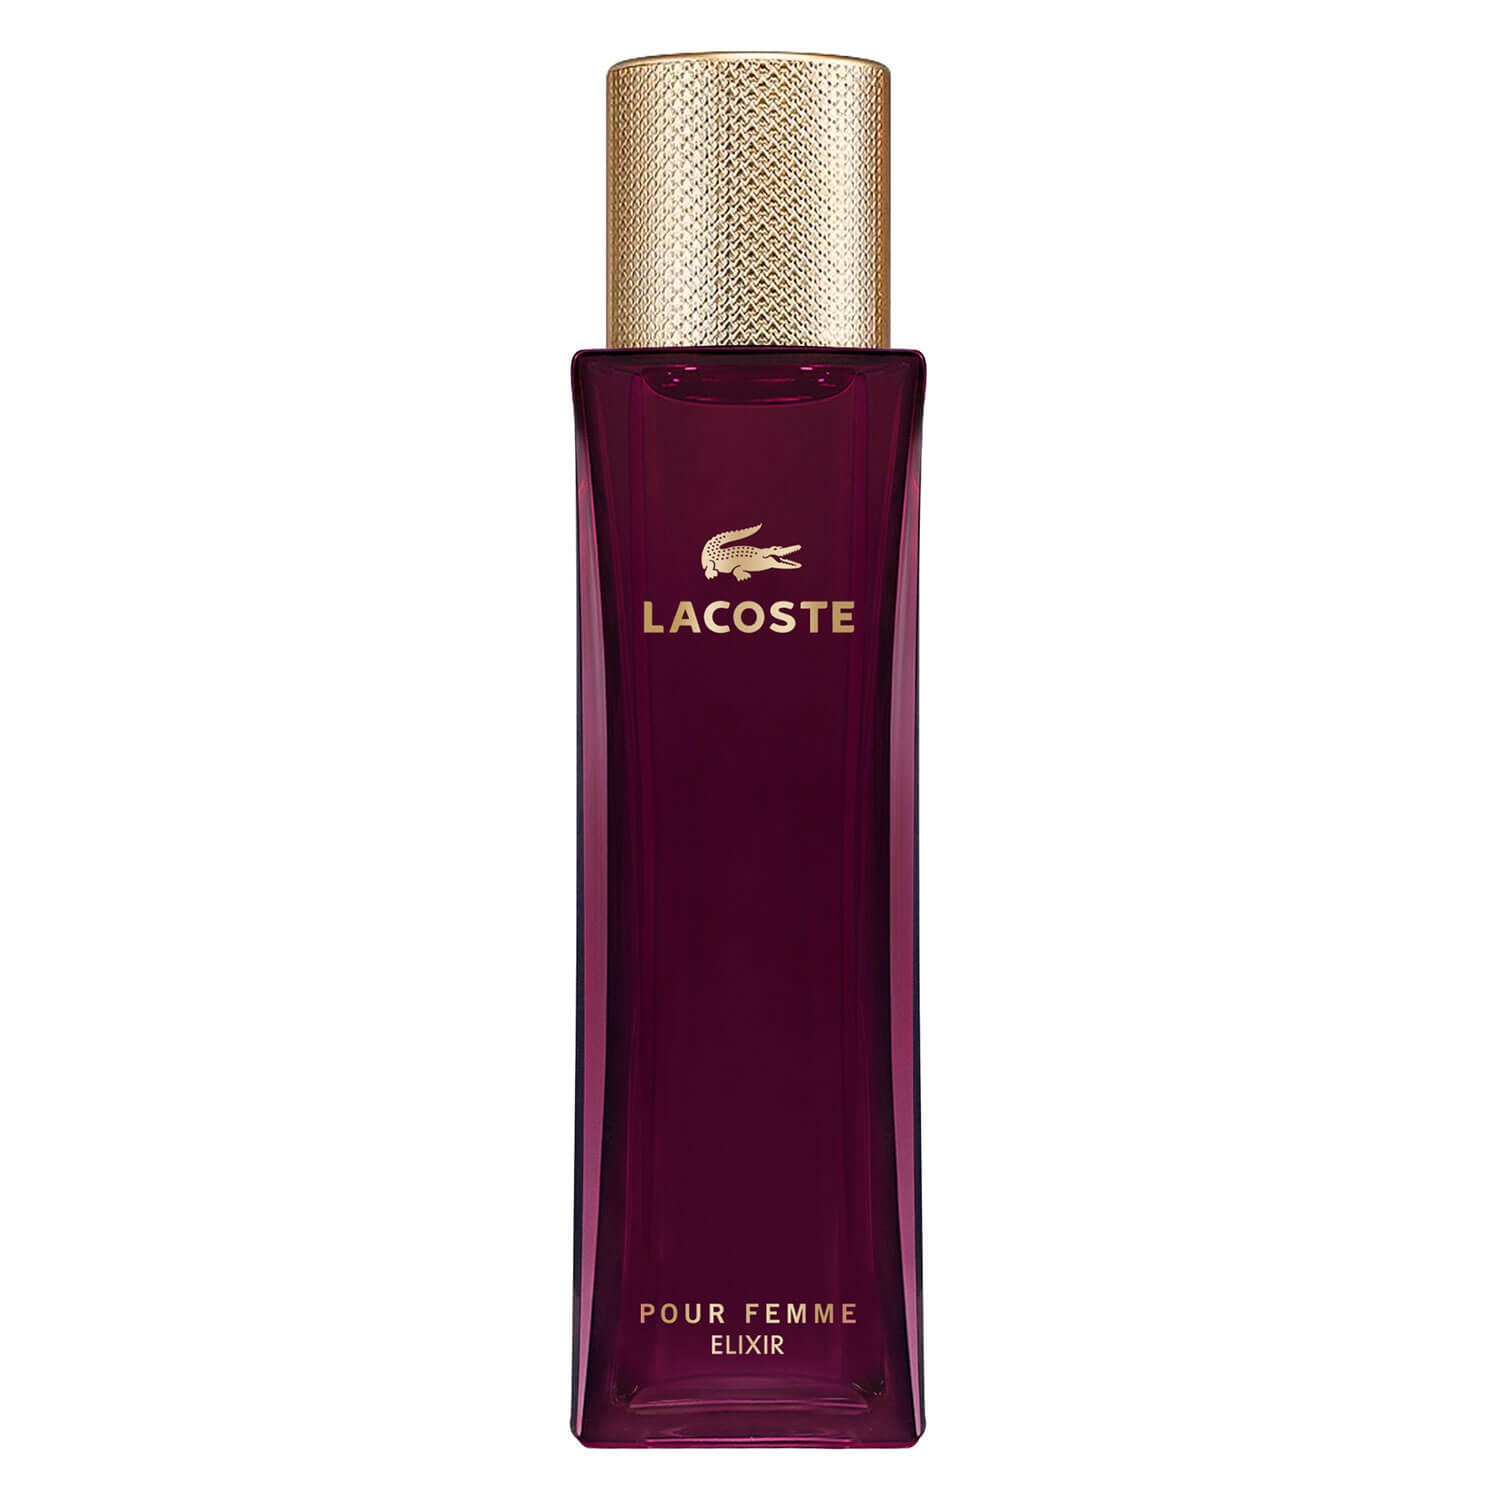 Produktbild von Lacoste Pour Femme - Elixir Eau de Parfum